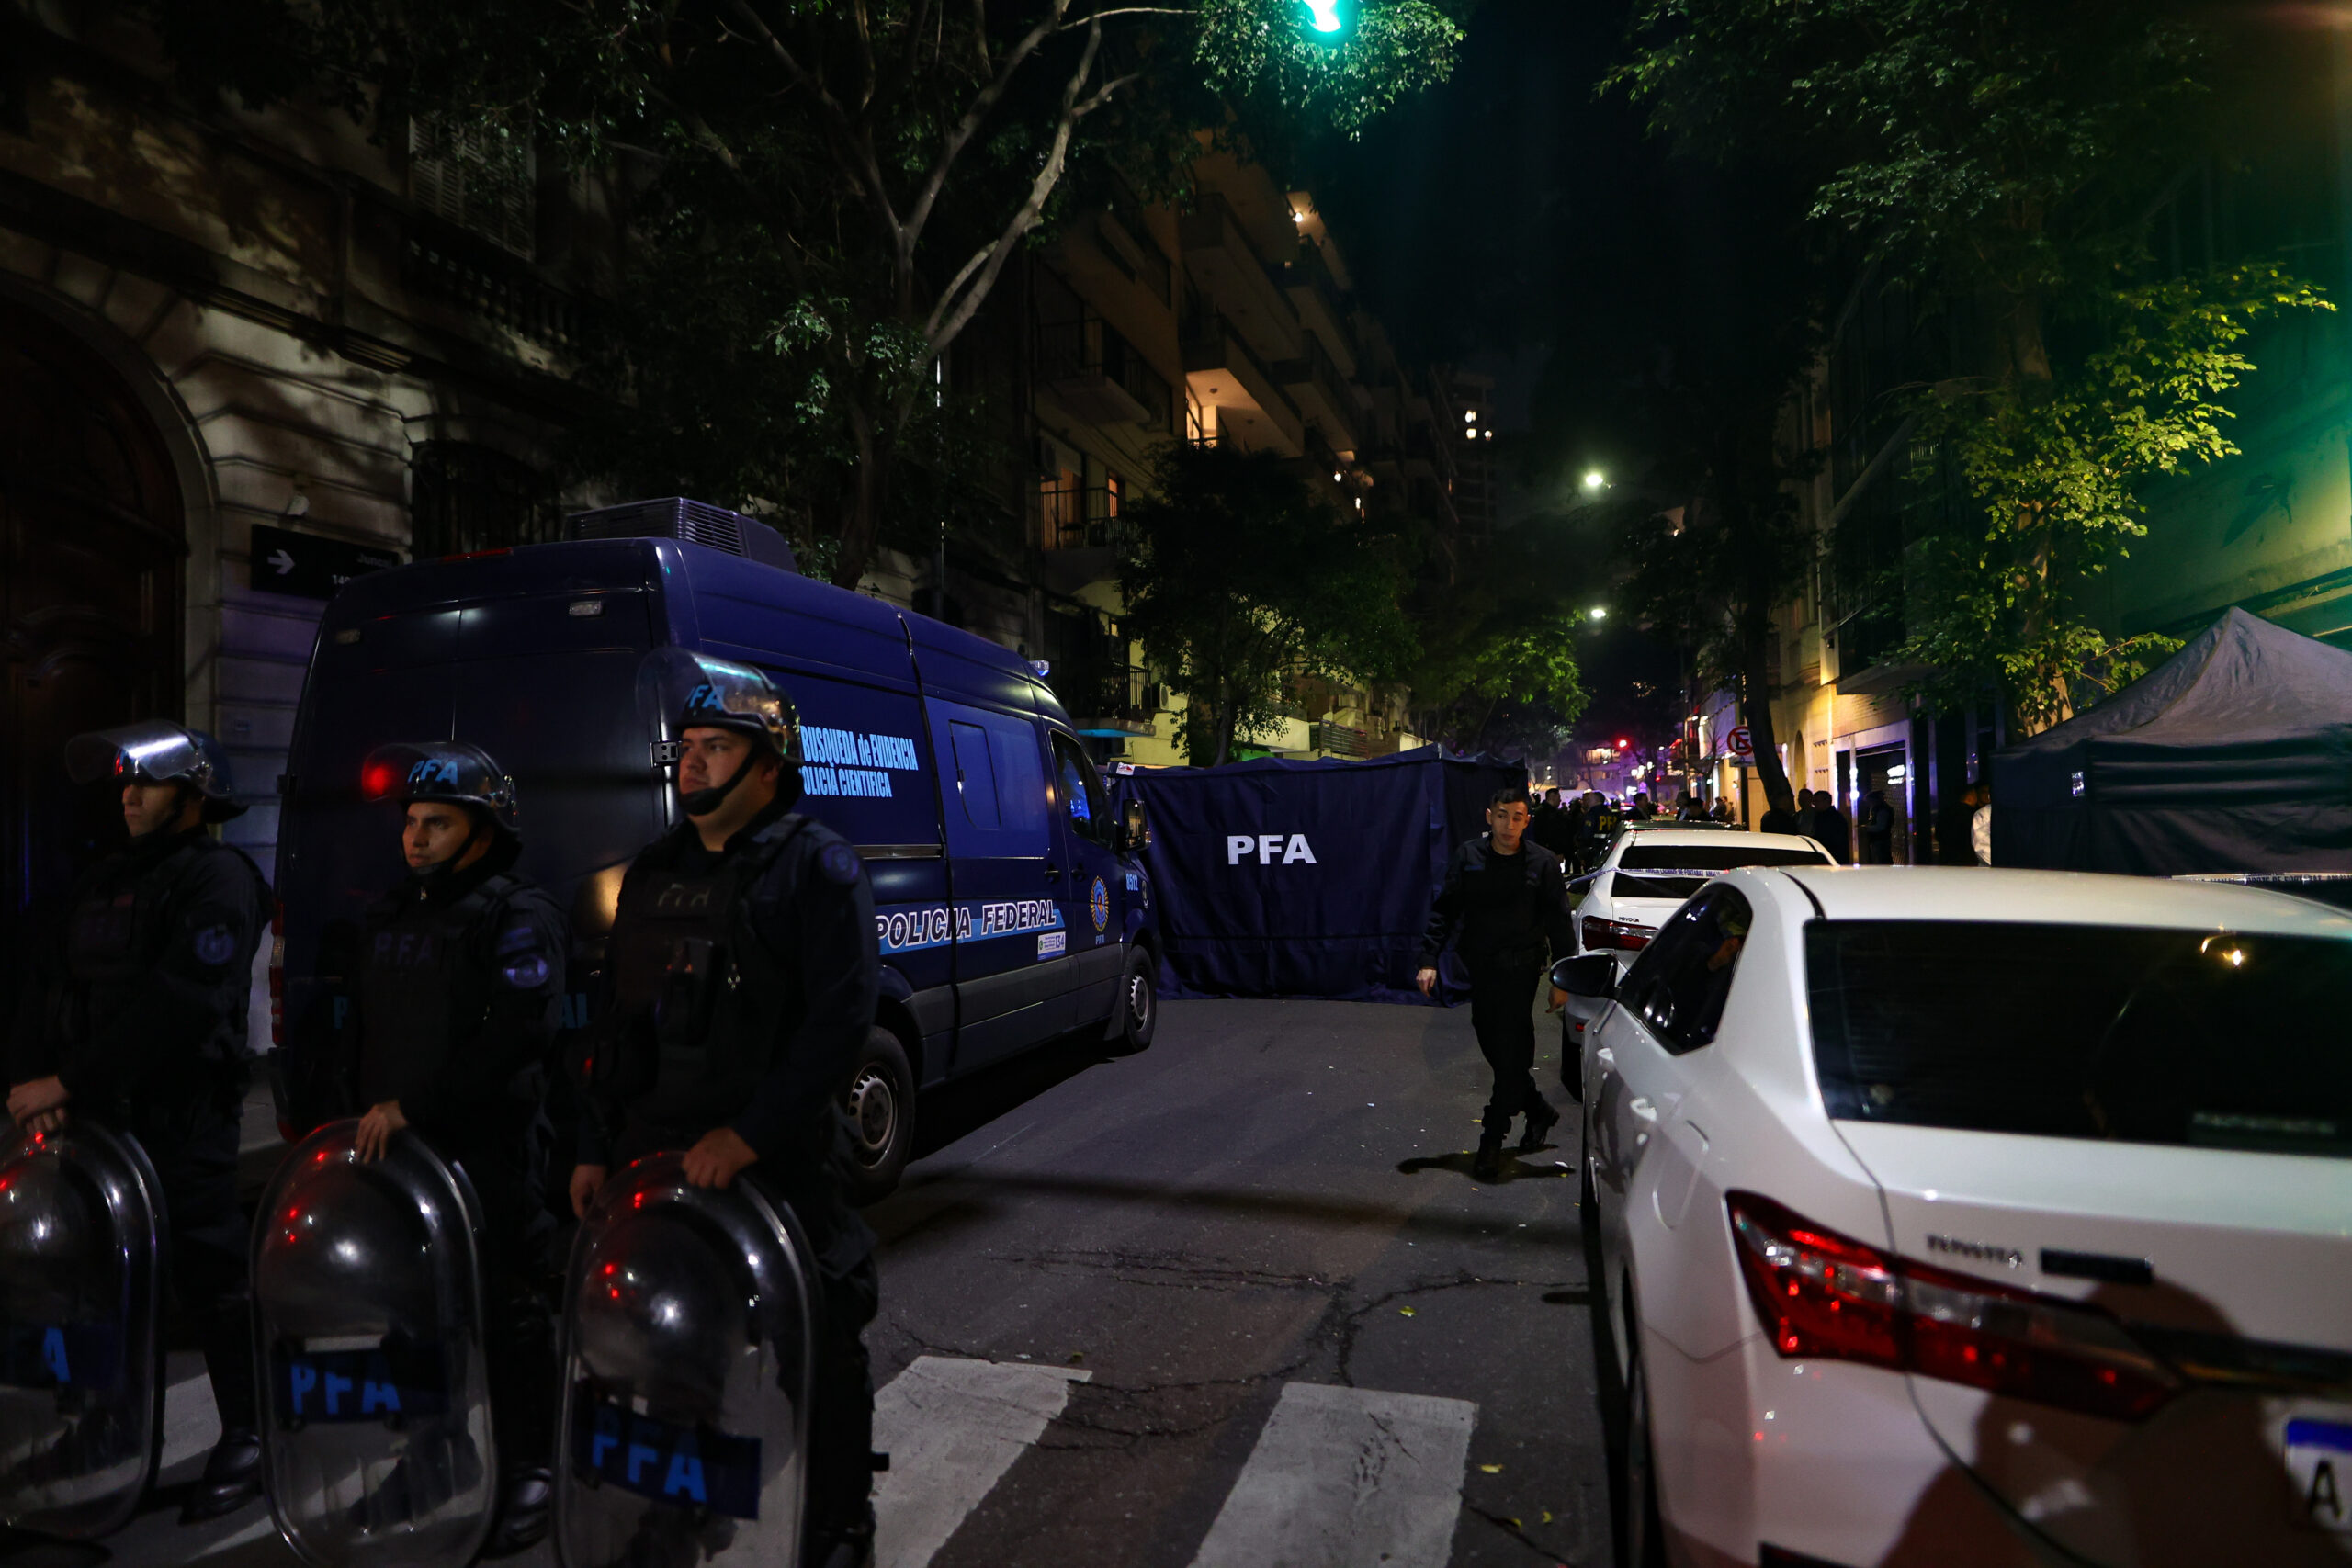 El "atentado" a Cristina Fernández, provoca tensión en Argentina